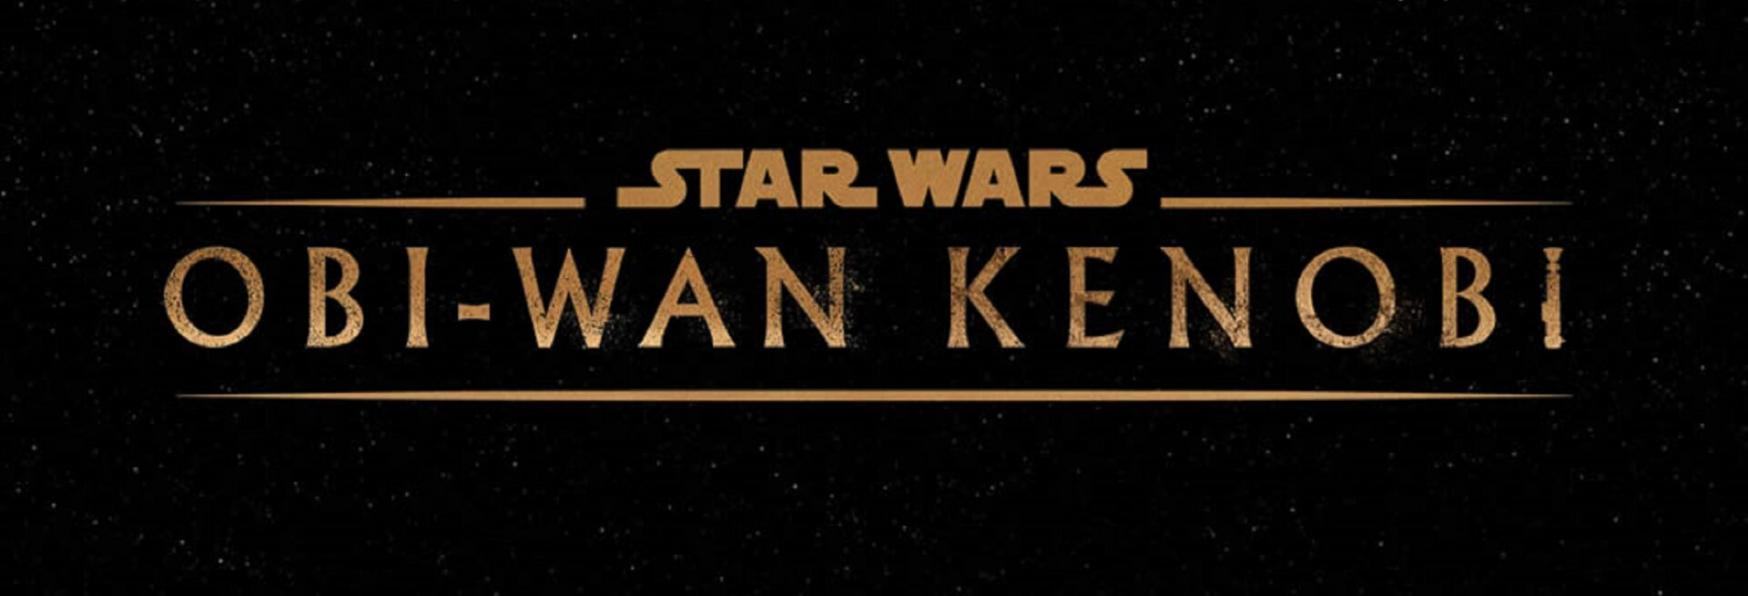 Obi-Wan Kenobi: la Data di Uscita e il Poster della Prossima Serie TV di Star Wars